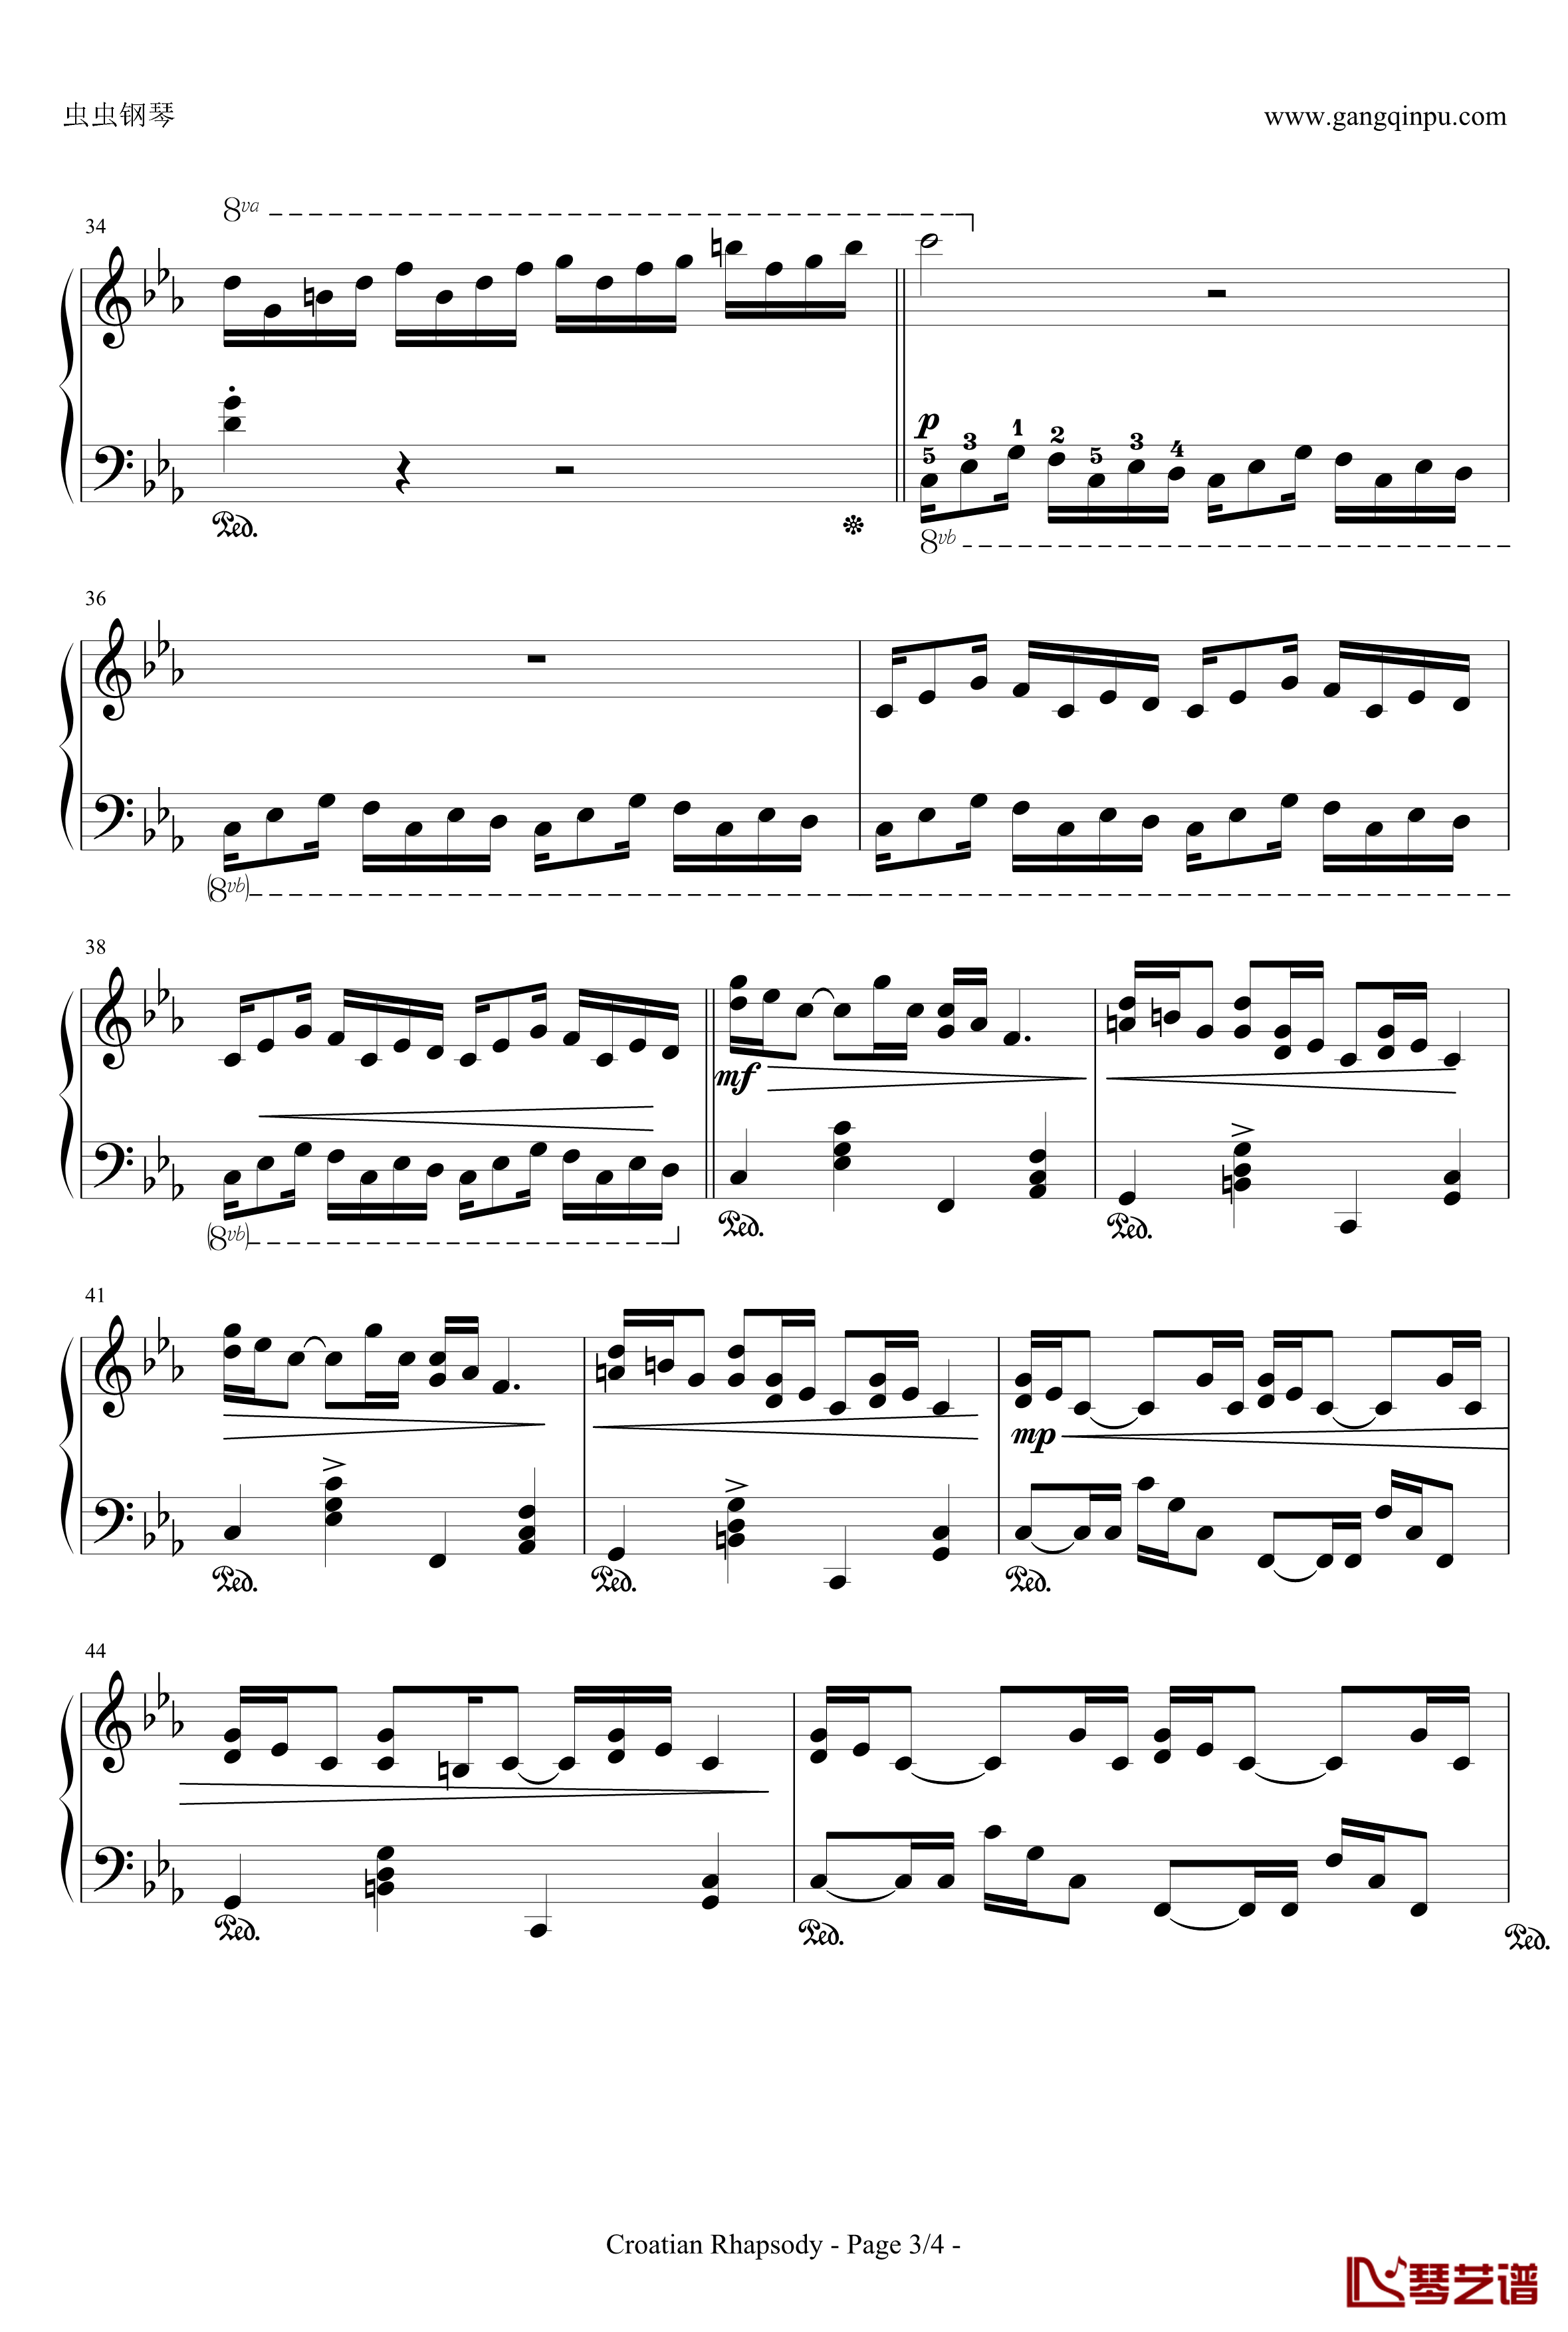 克罗地亚狂想曲钢琴谱-带指法简易版学生最爱-马克西姆-Maksim·Mrvica3